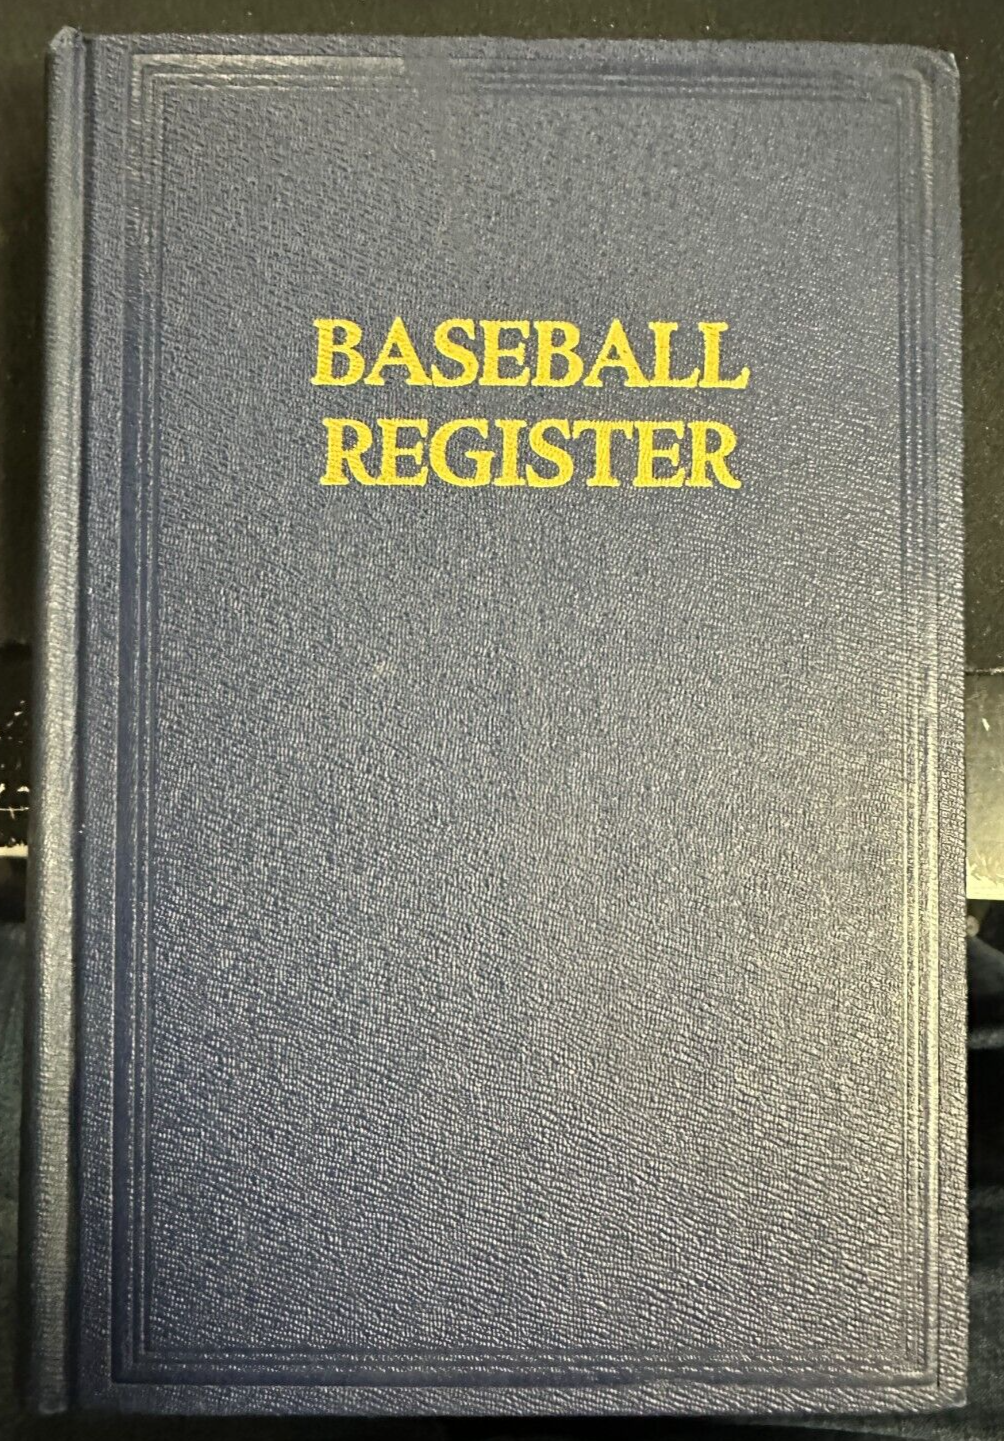 The Sporting News 1951 Baseball Register Hardcover Book Rare